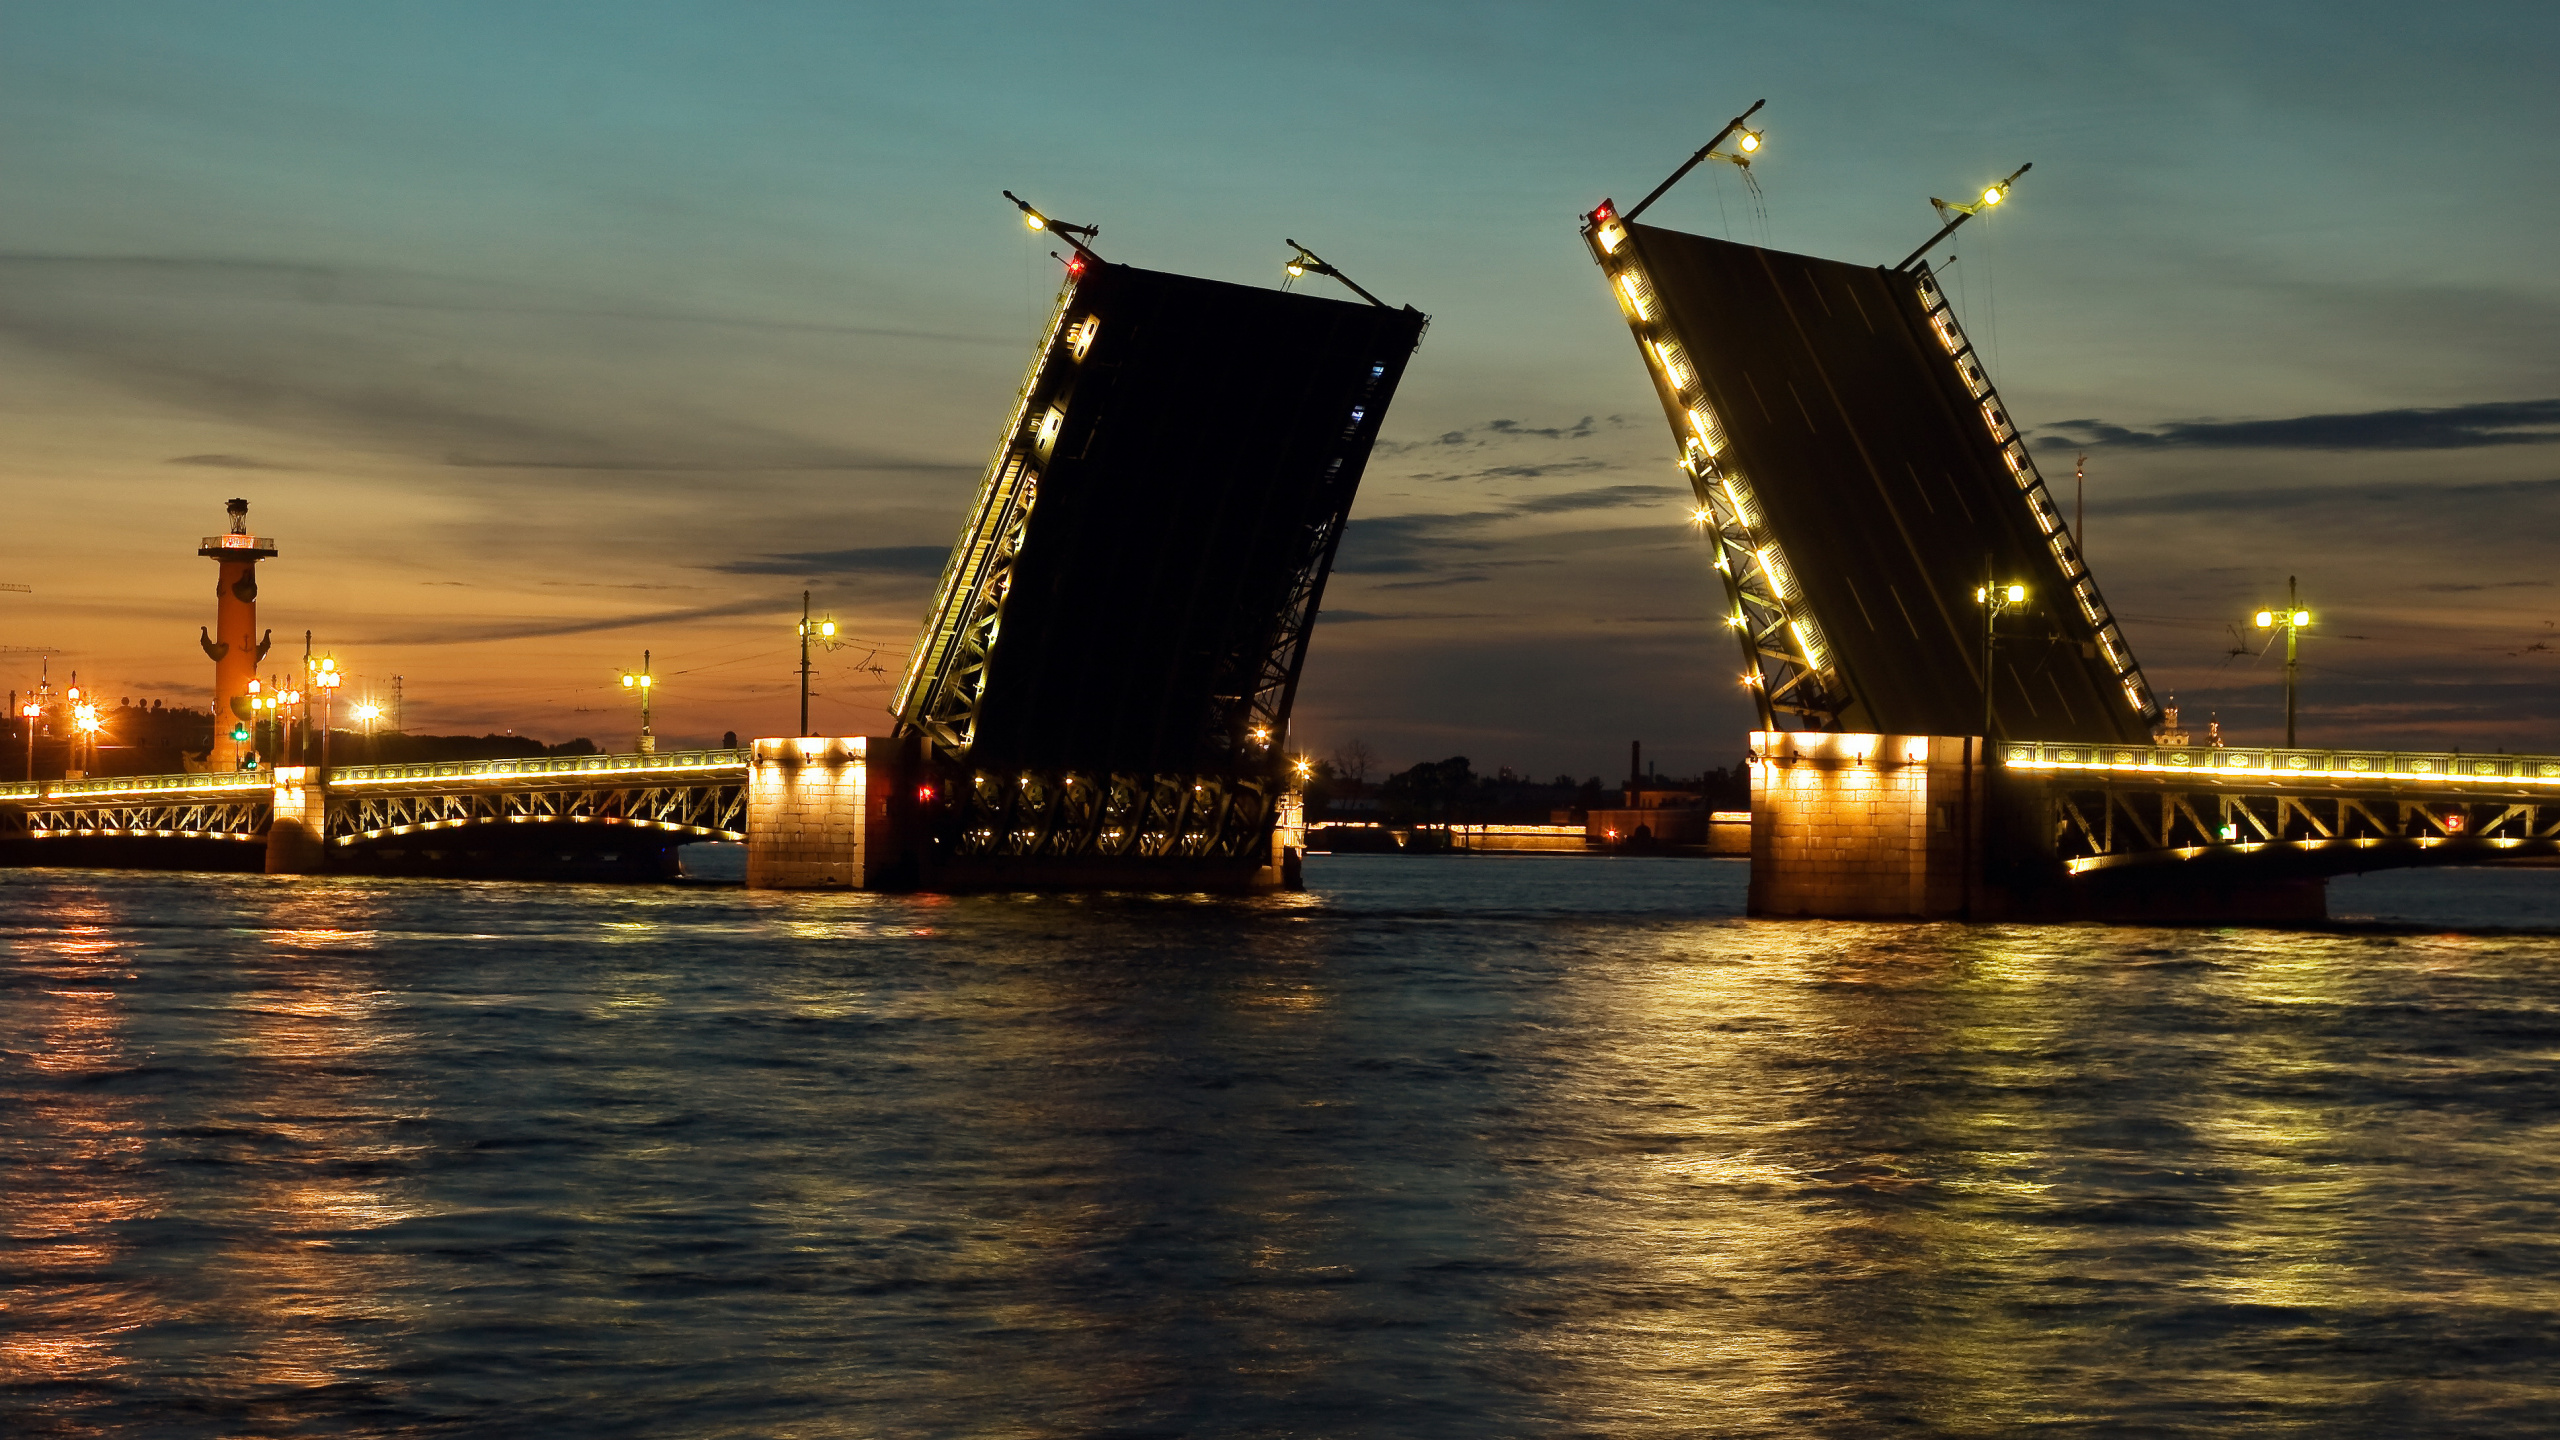 瓦河, 晚上, 可移动座桥, 黄昏, 猩红色的帆 壁纸 2560x1440 允许